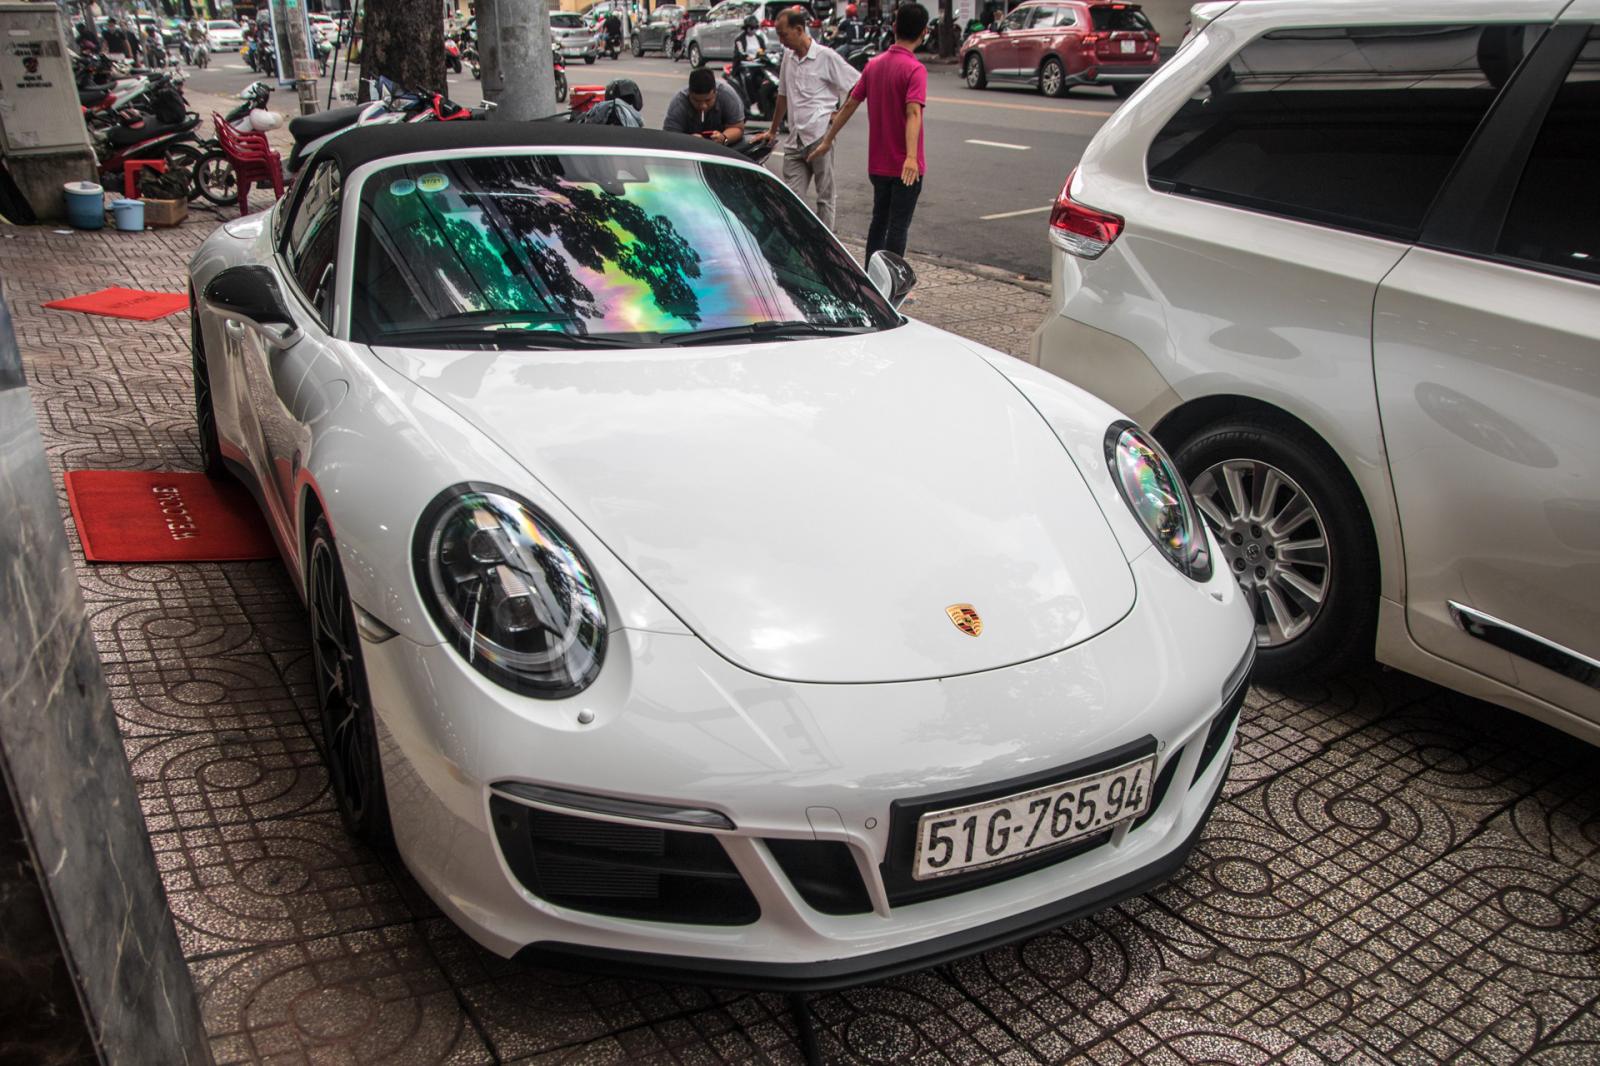 Siêu xe Porsche 911 Targa 4 GTS độc nhất Việt Nam được đăng ký biển số 5a